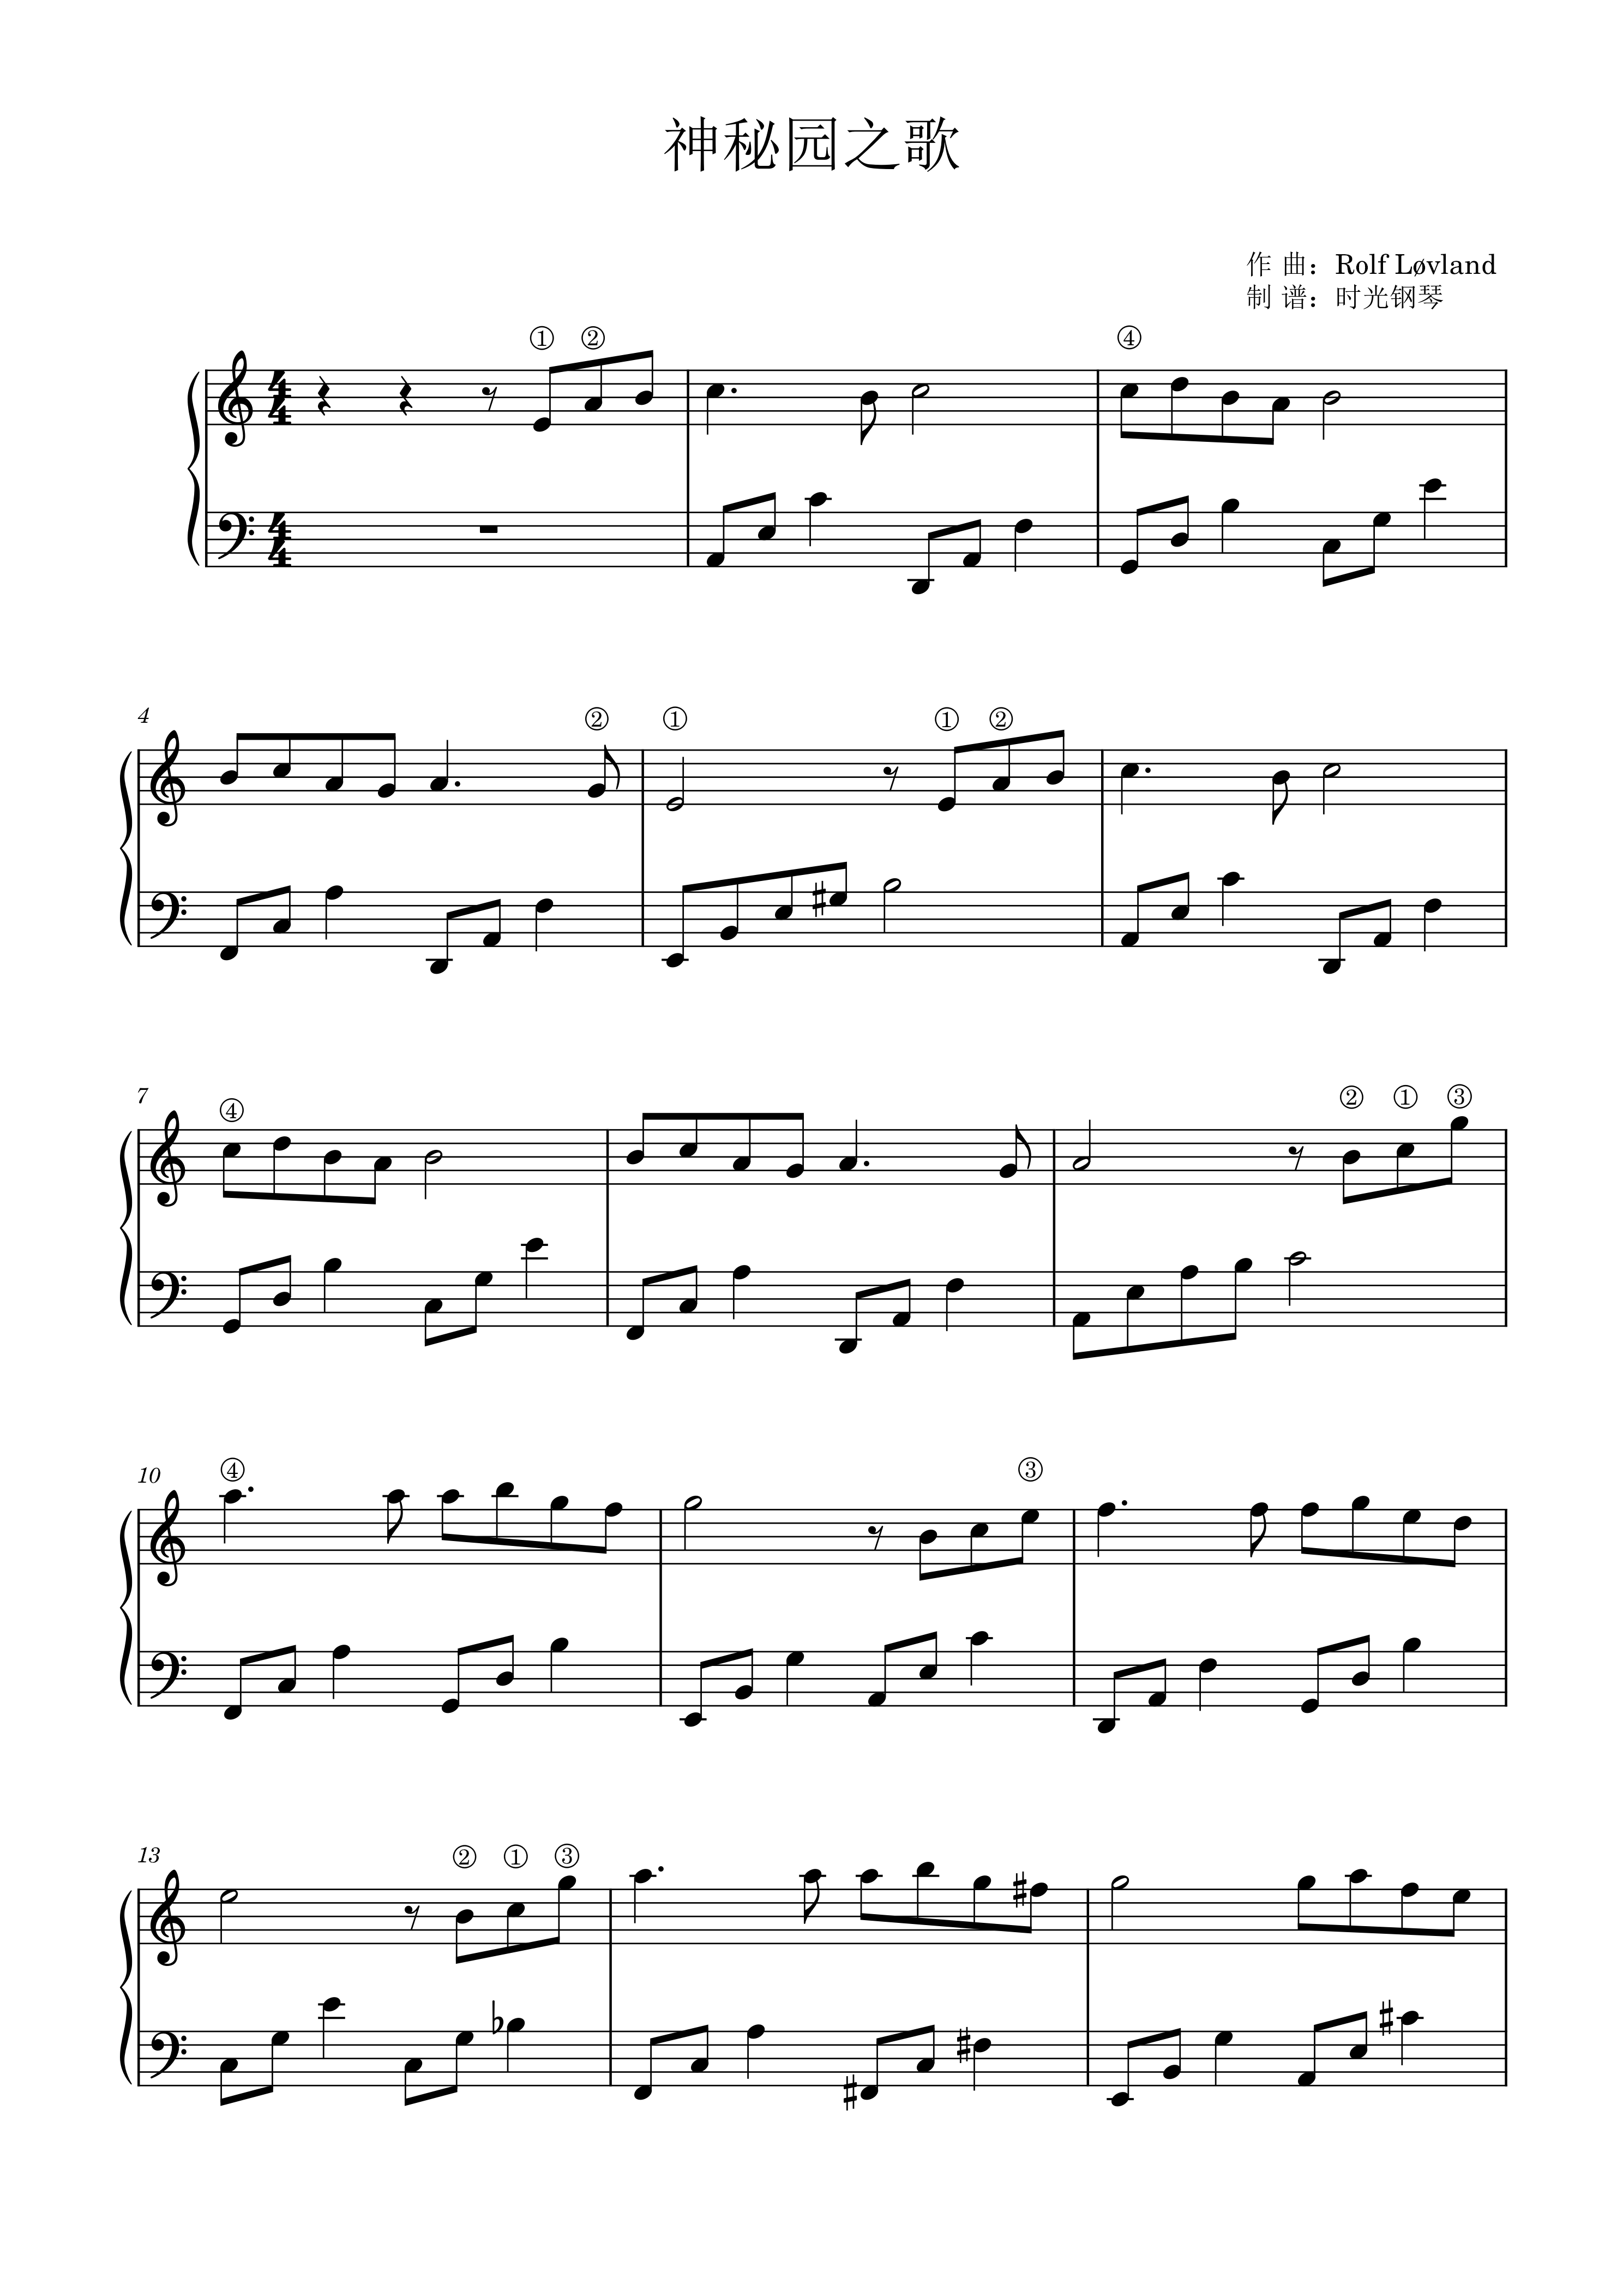 神秘园之歌钢琴小提琴合奏谱-钢琴谱-最全钢琴谱